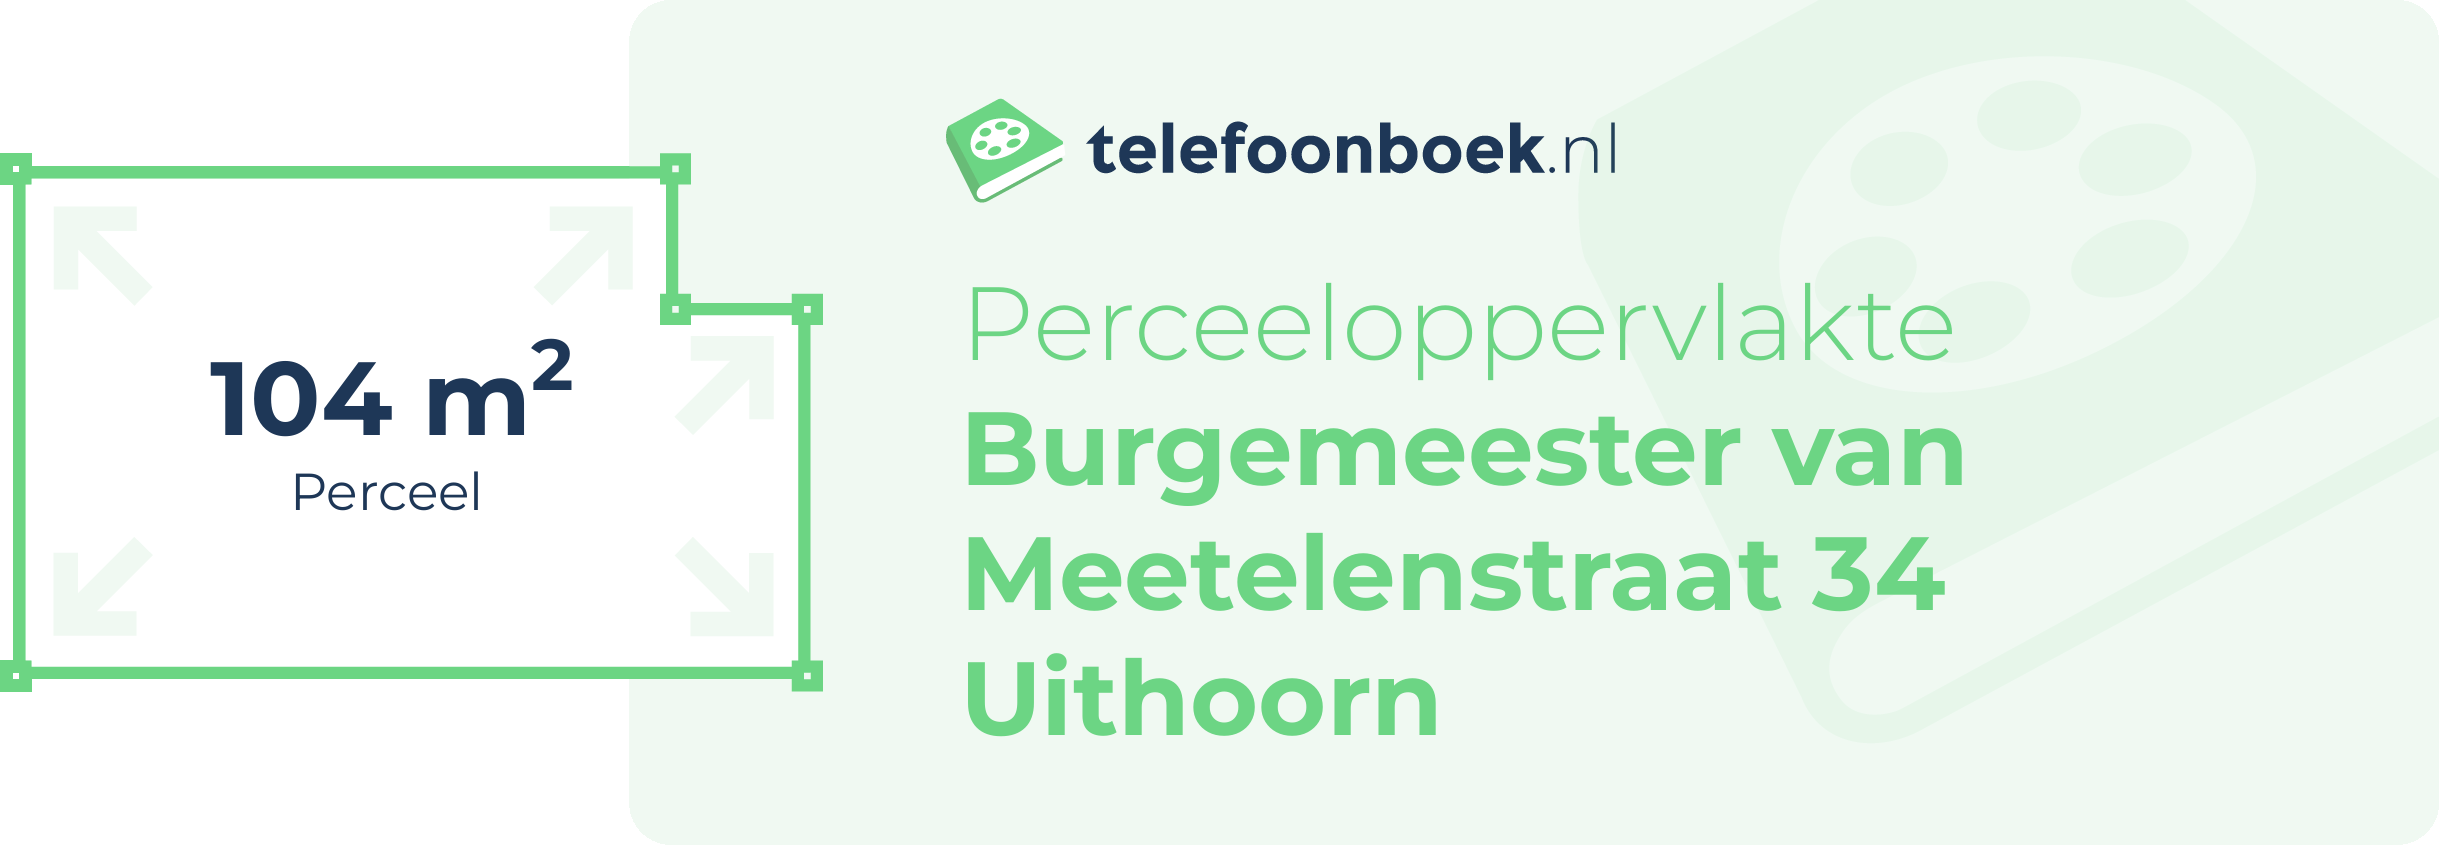 Perceeloppervlakte Burgemeester Van Meetelenstraat 34 Uithoorn